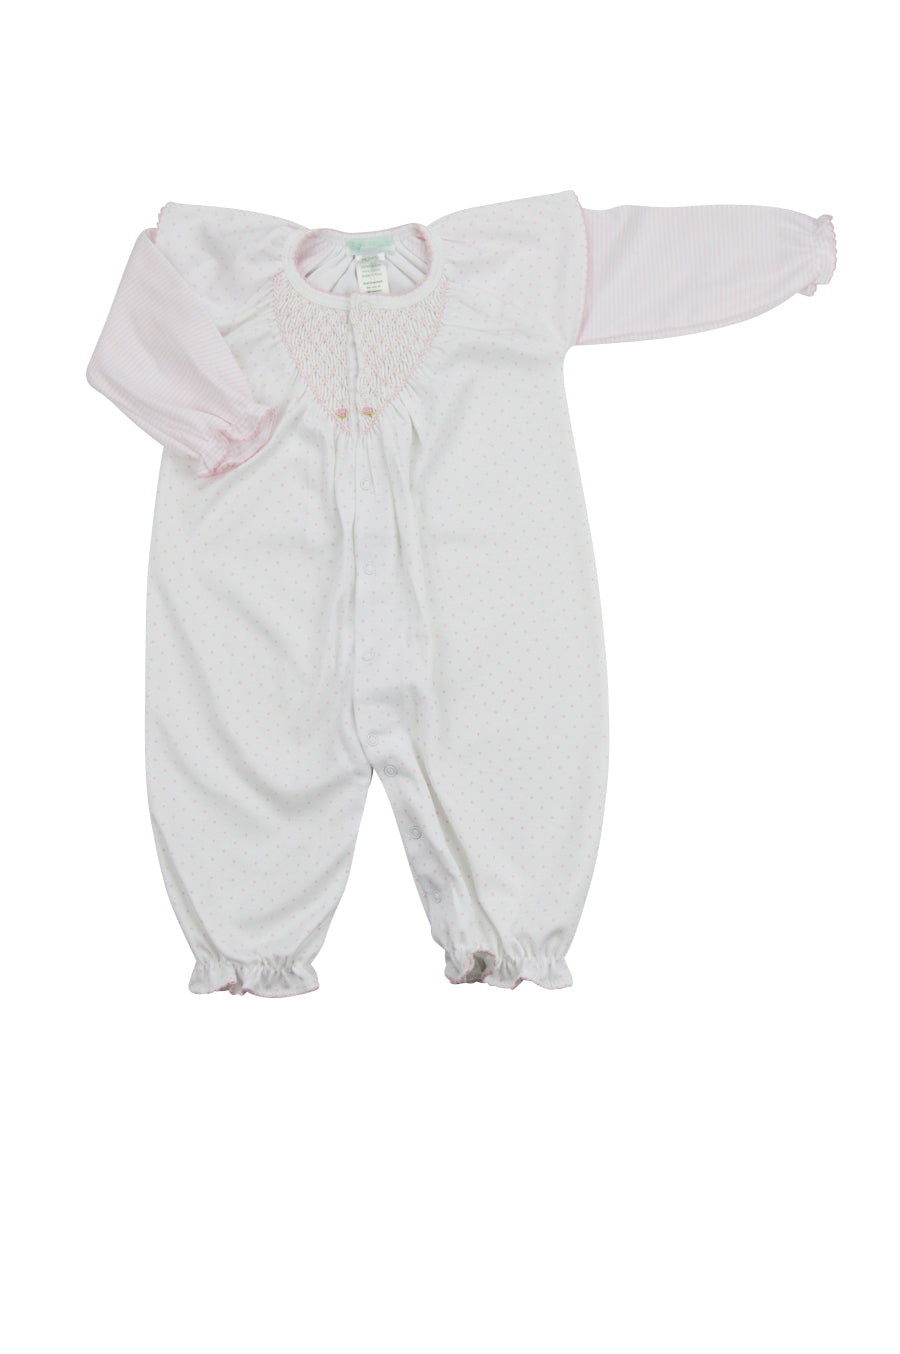 Baby Girl's Polka Dot and Stripes Converter - Little Threads Inc. Children's Clothing